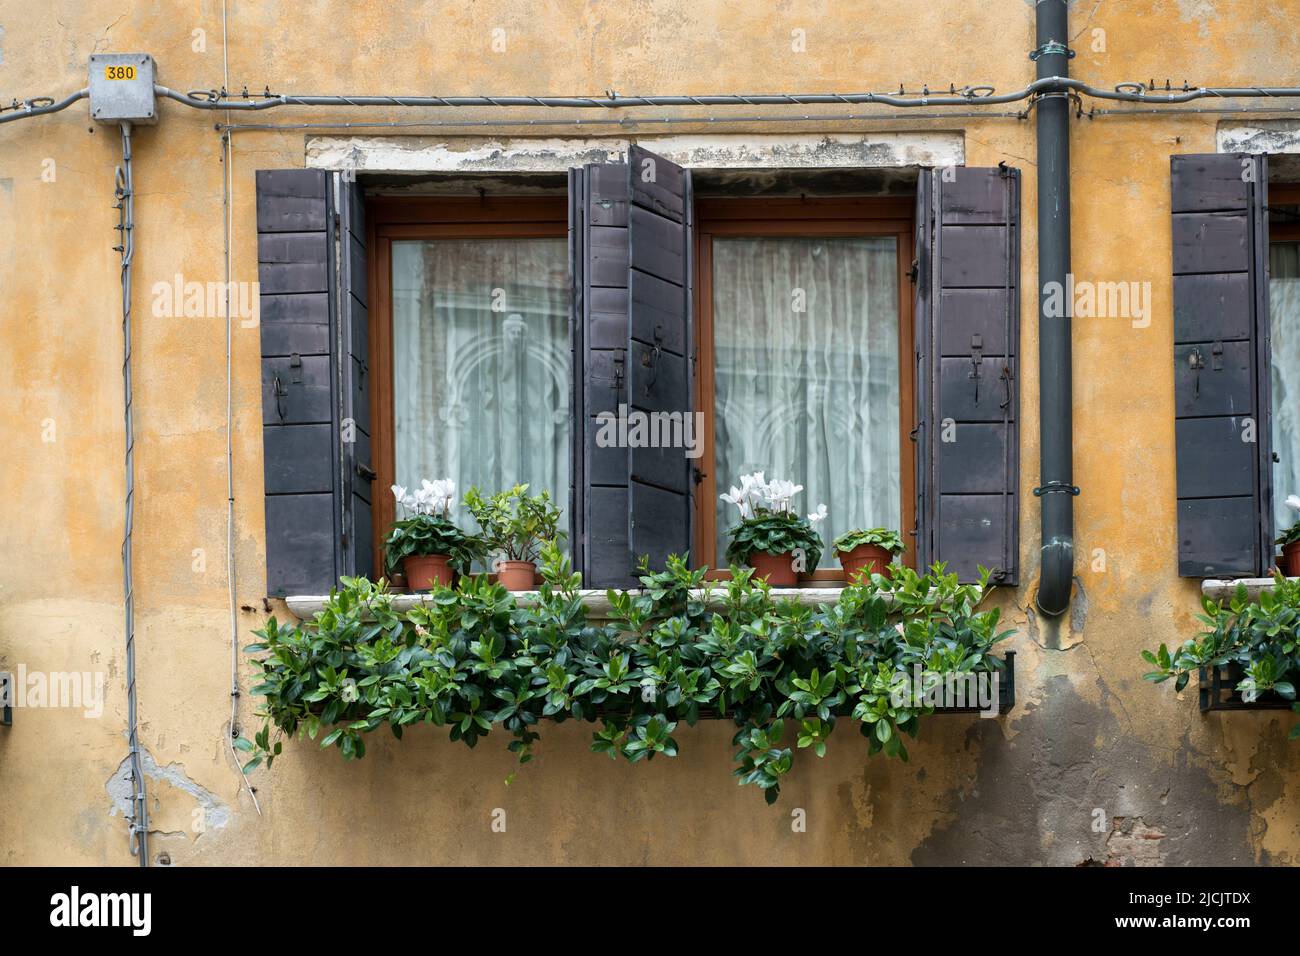 edificio antiguo con dos ventanas y flores en macetas Foto de stock